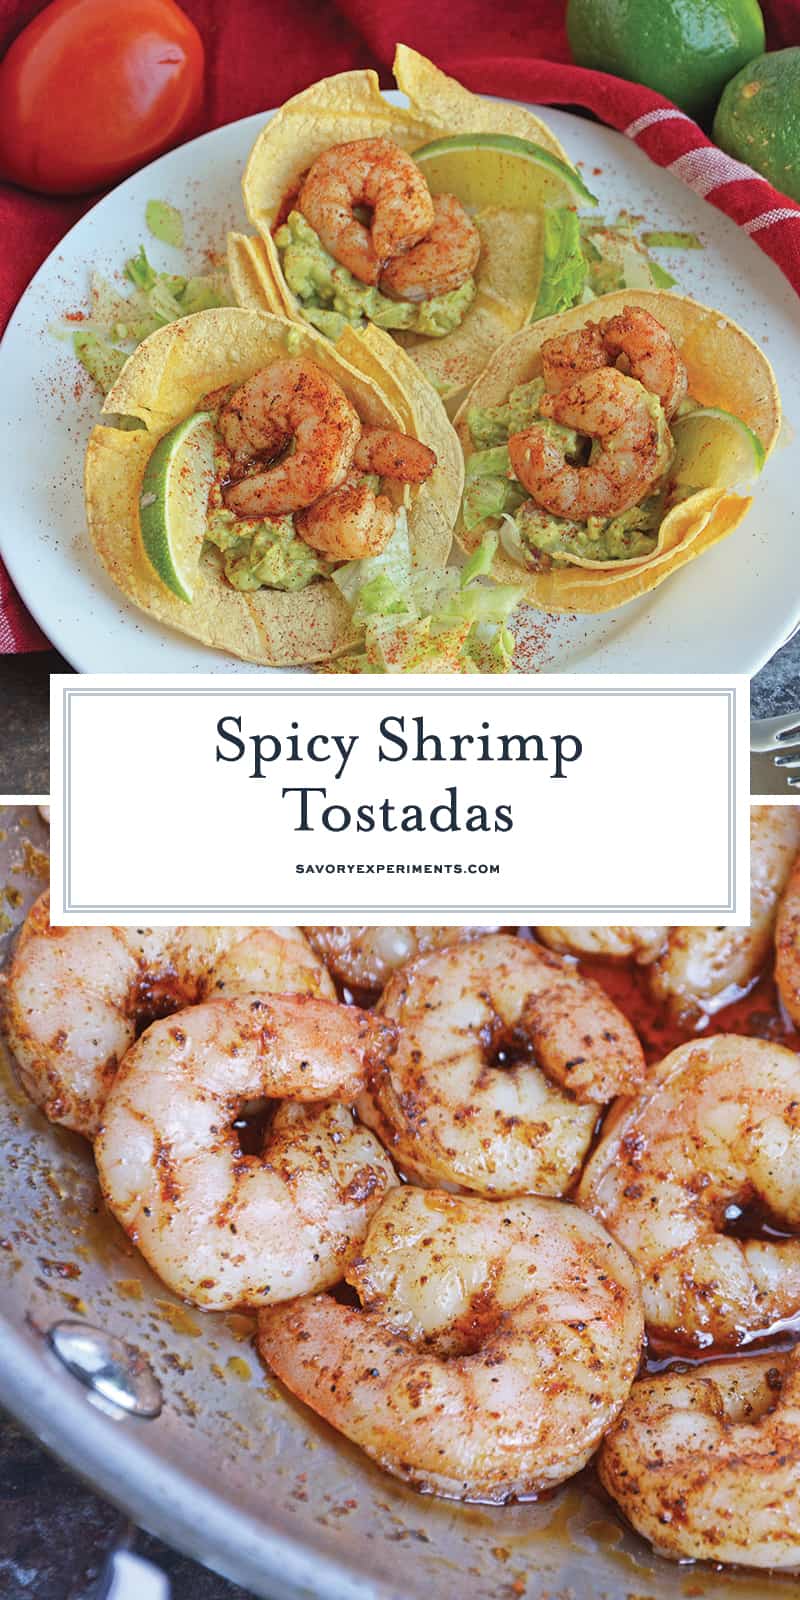 Shrimp Tostadas Recipe - A Spicy Mexican Shrimp Recipe